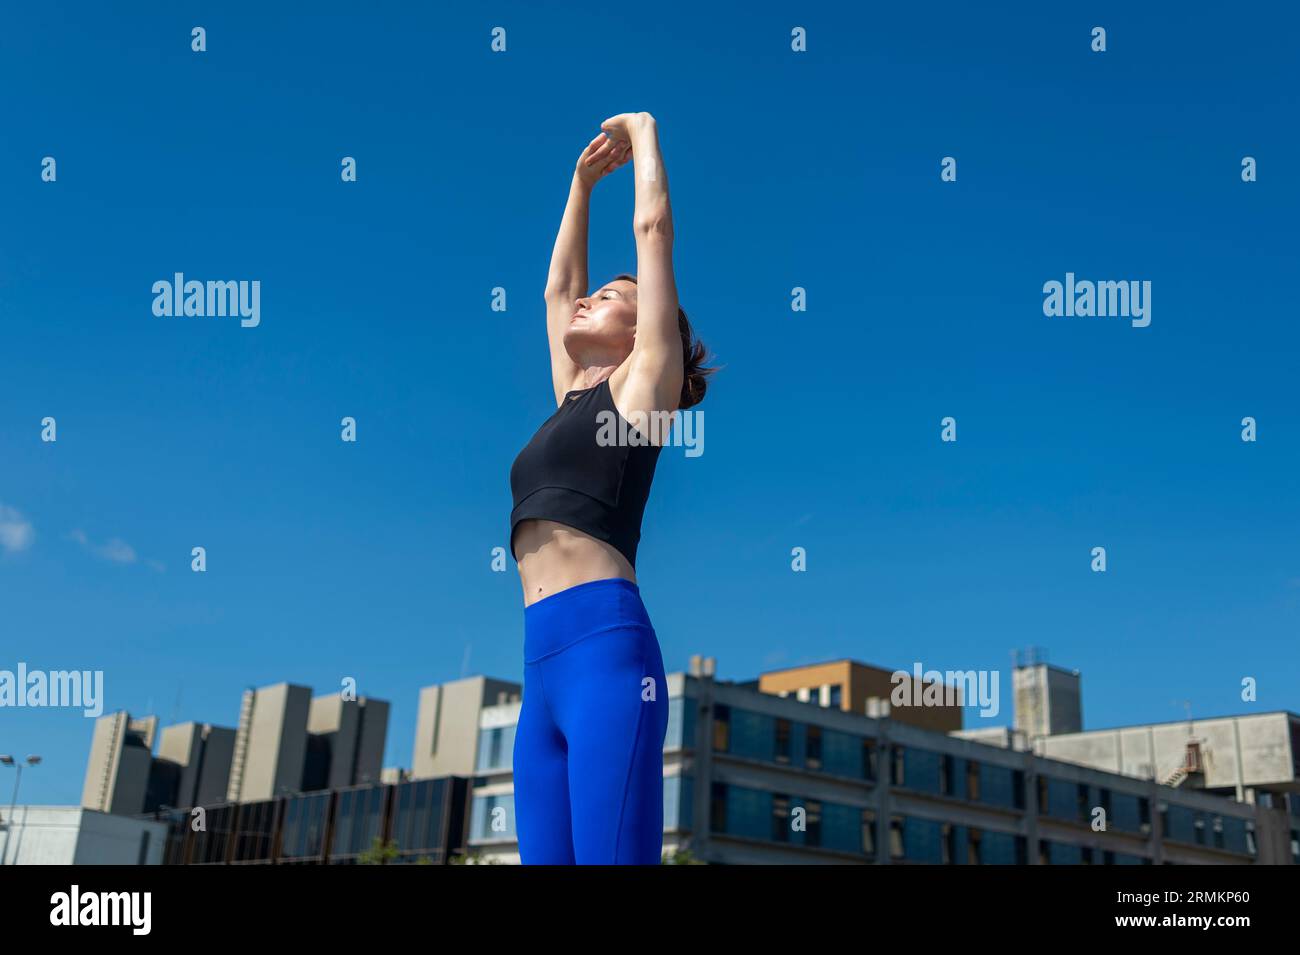 La donna allunga le braccia sopra la testa mentre si prepara all'esercizio Foto Stock